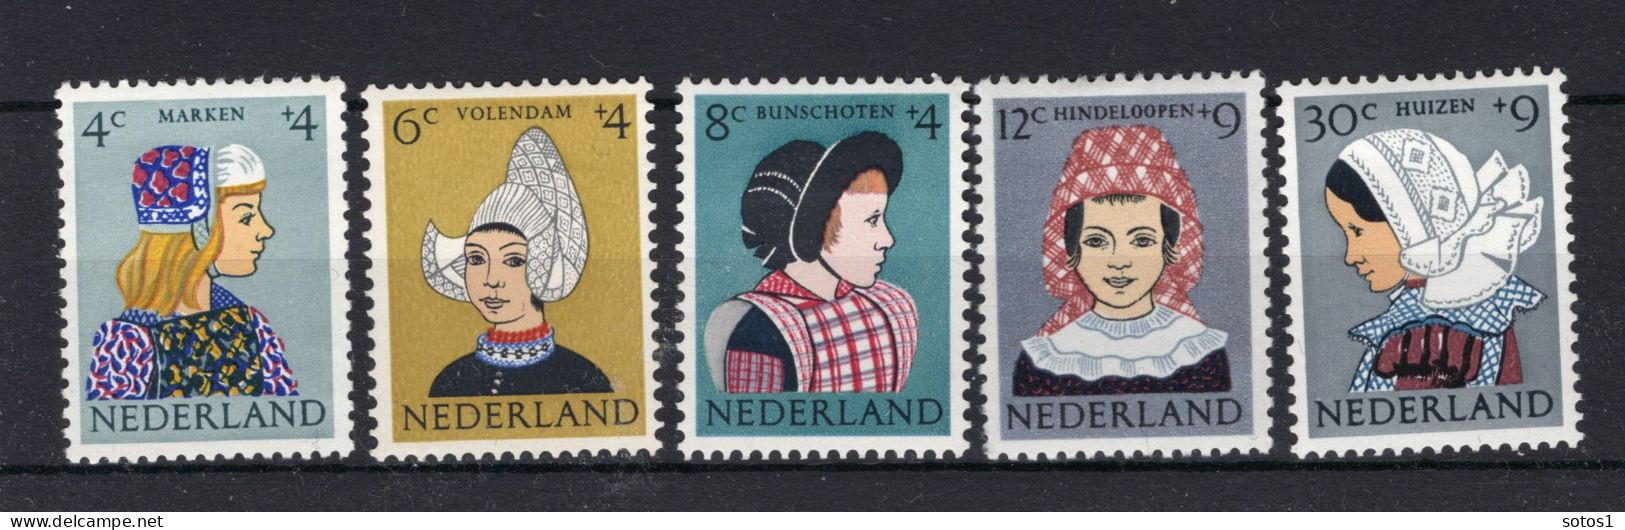 NEDERLAND 747/751 MH 1960 - Kinderzegels, Klederdrachten - Ongebruikt